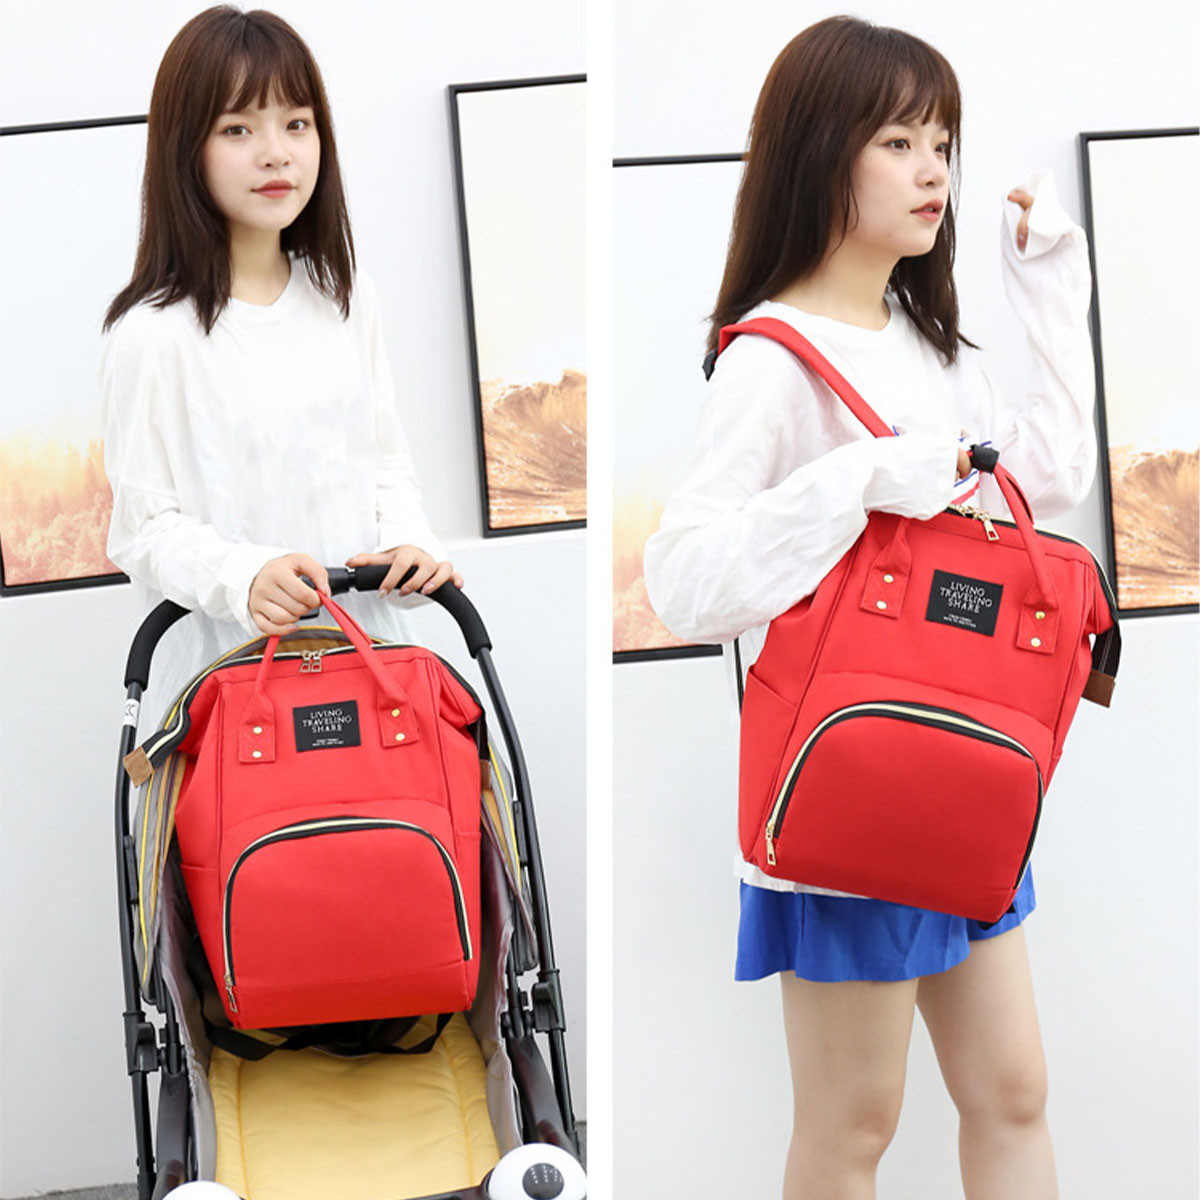 36L-Canvas-Mother-Baby-Bag-Multifunctional-Diaper-Bag-Shoulder-Bag-Backpack-Outdoor-Camping-Travel-1736483-8